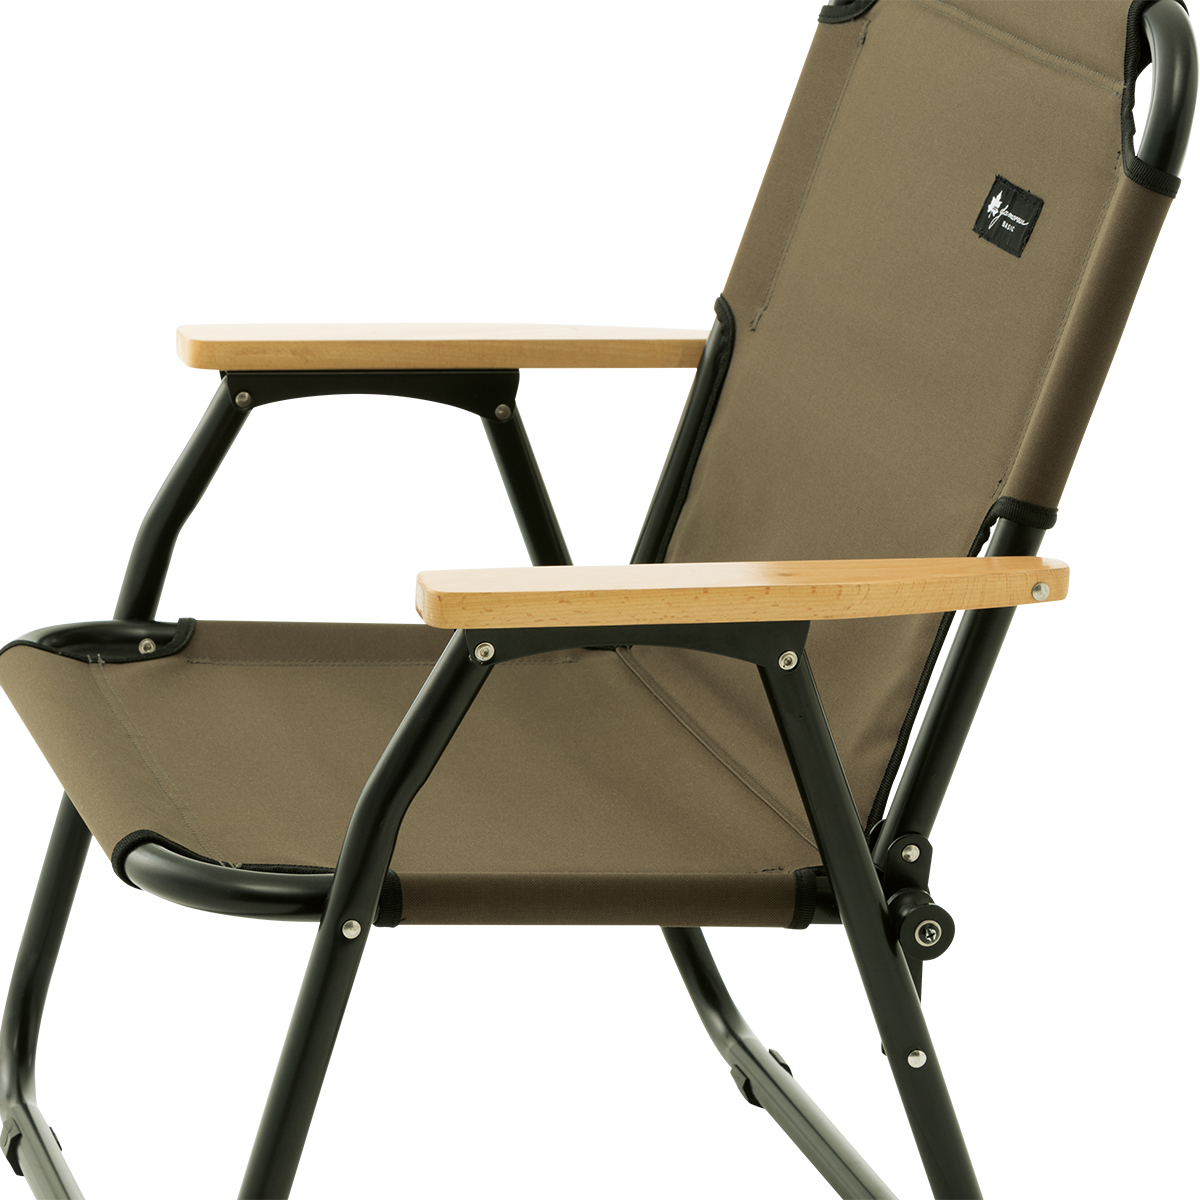 グランベーシック チェアfor1|ギア|家具|椅子・ベンチ|製品情報|ロゴス 